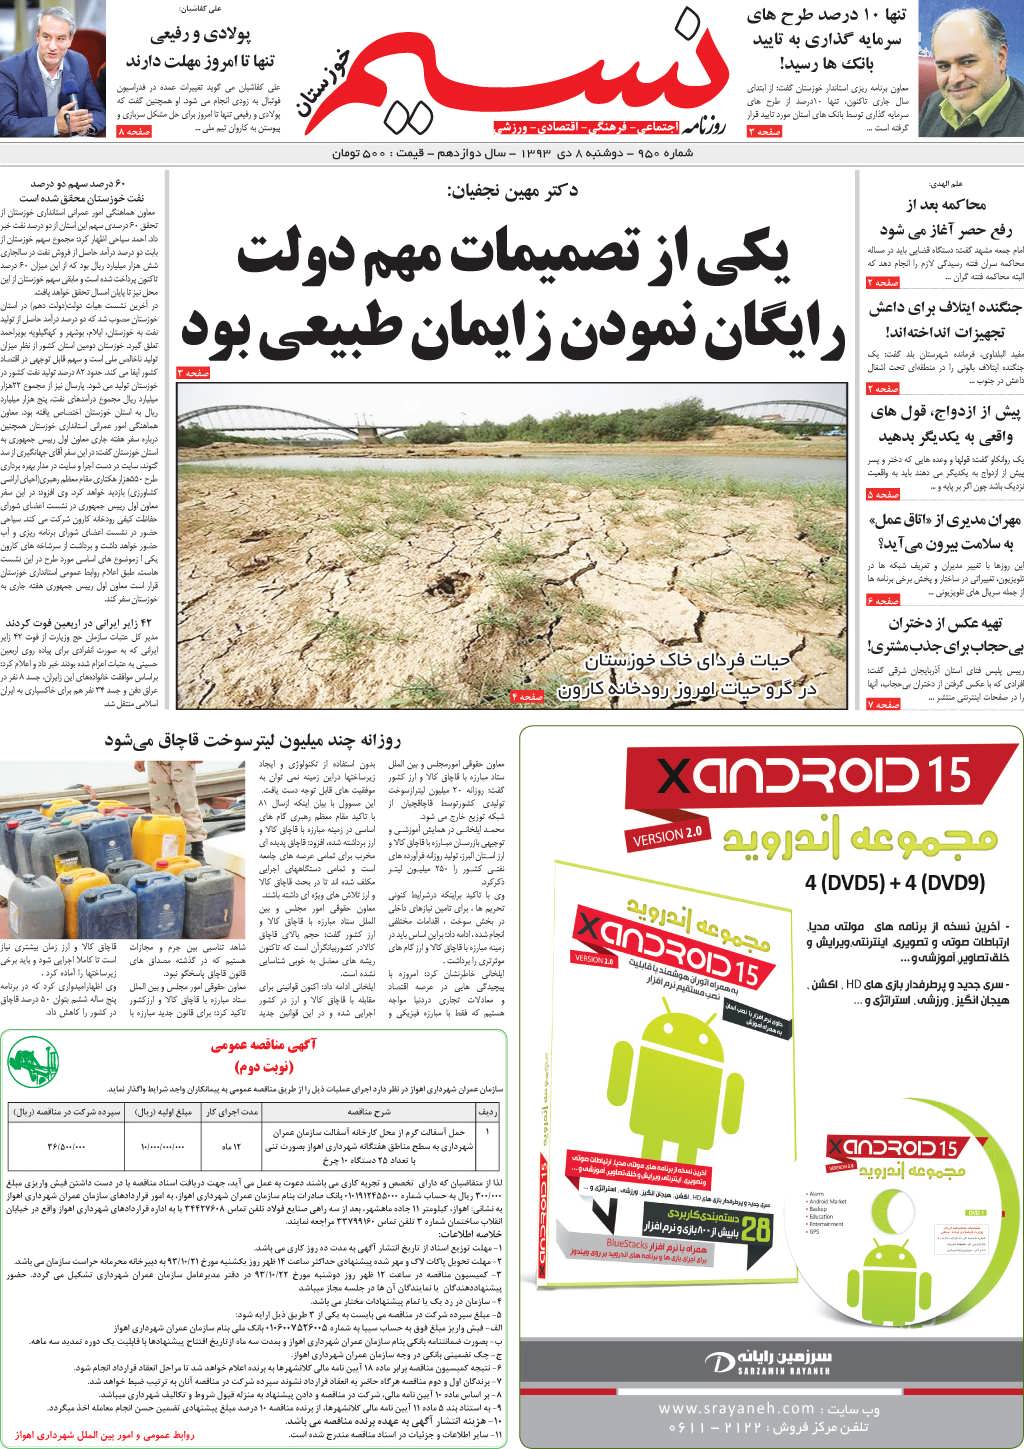 صفحه اصلی روزنامه نسیم شماره 950 